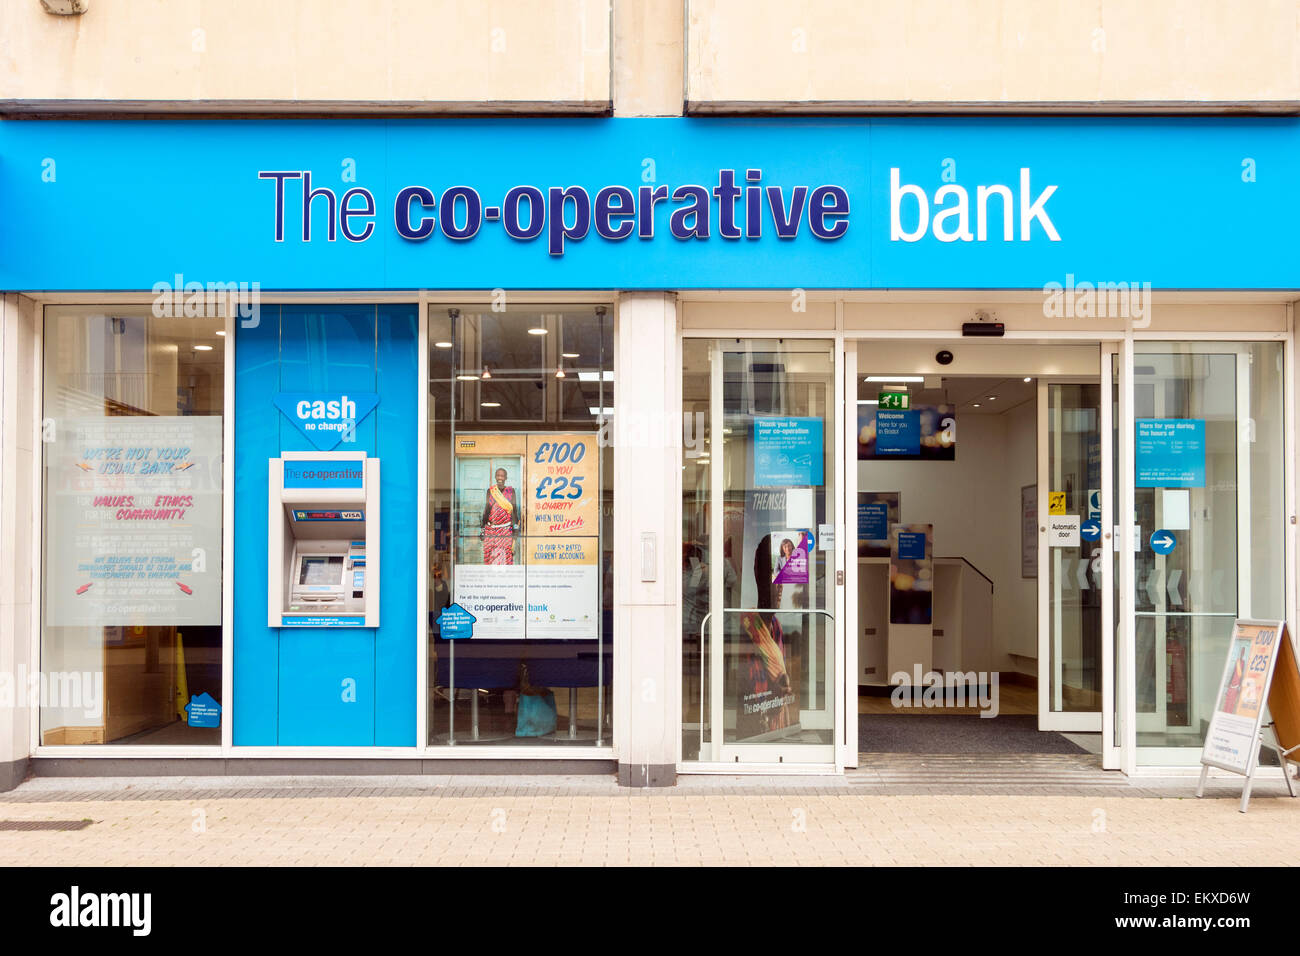 Cooperativa Bancaria, Bristol, Reino Unido. Foto de stock